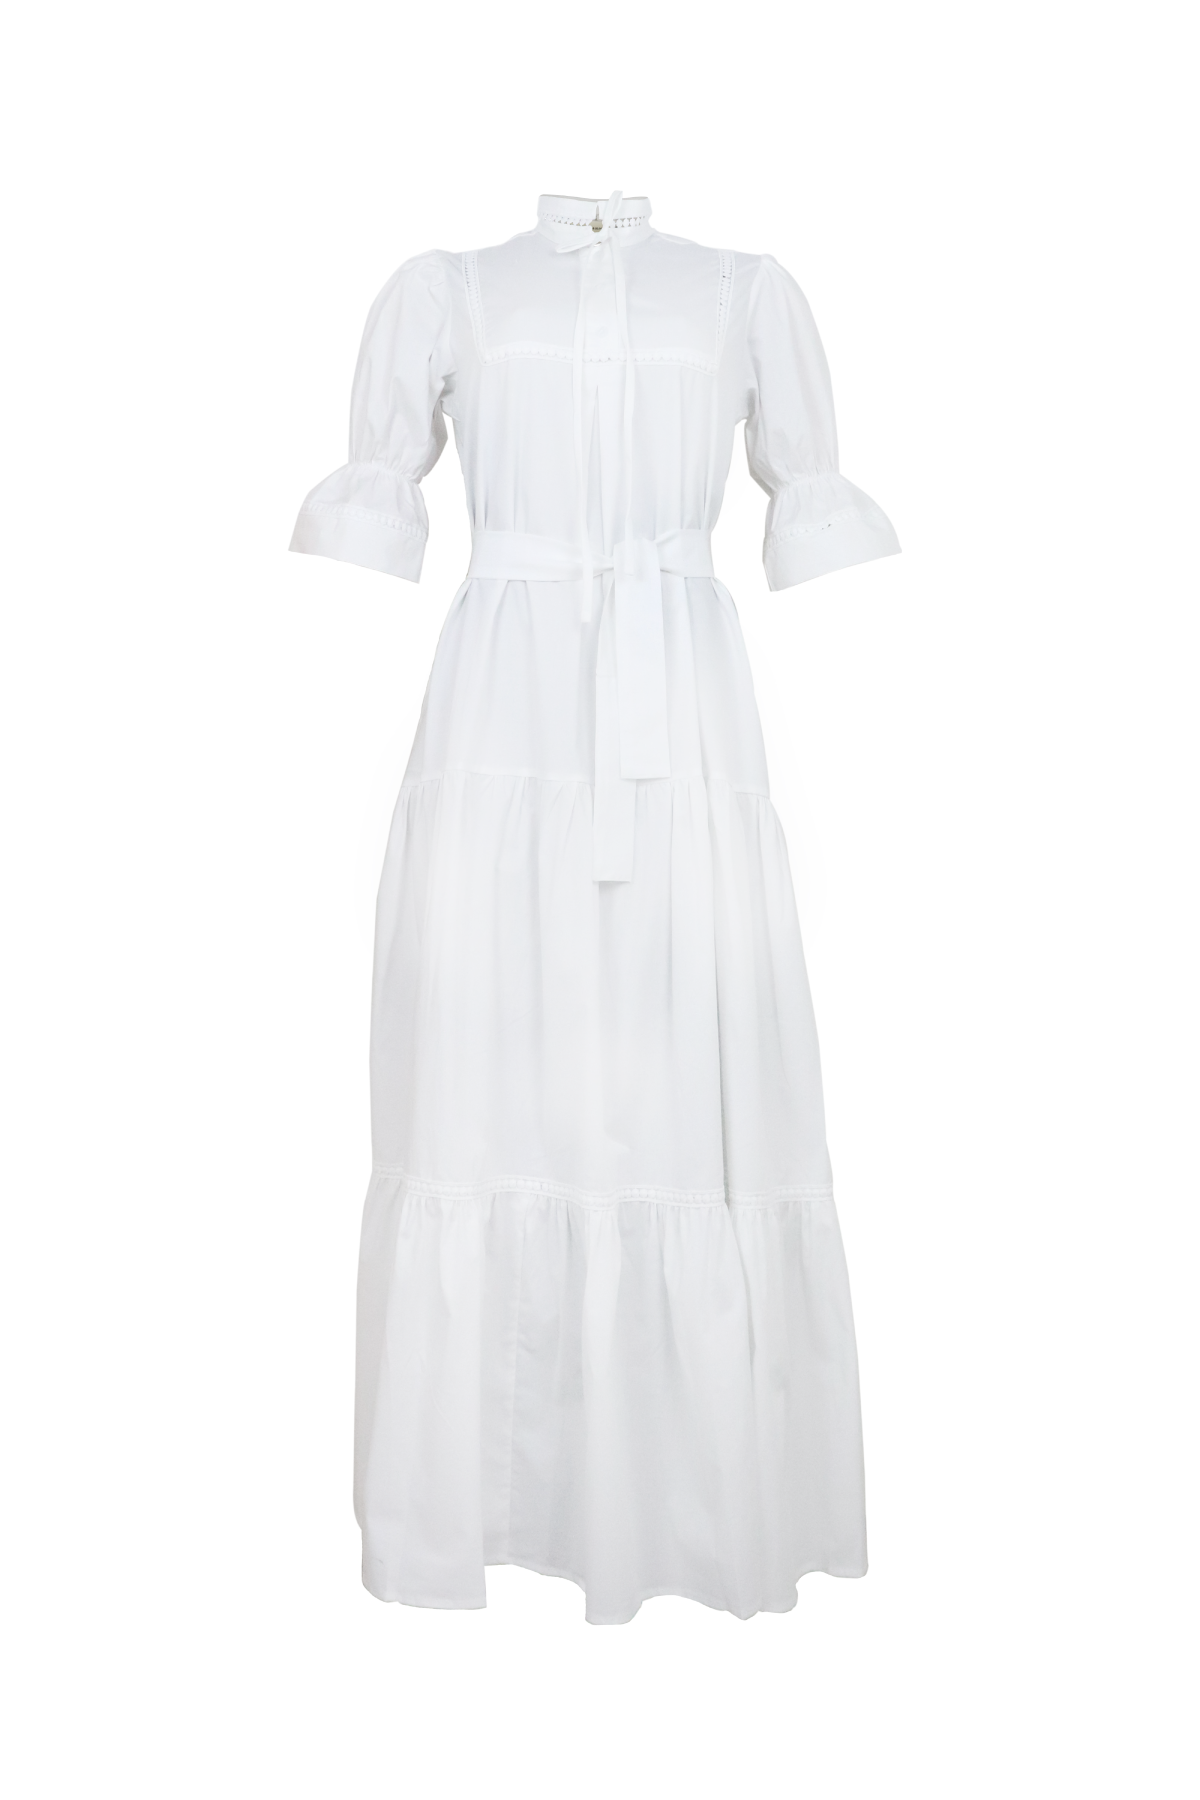 Vestido blanco, largo y elegante.